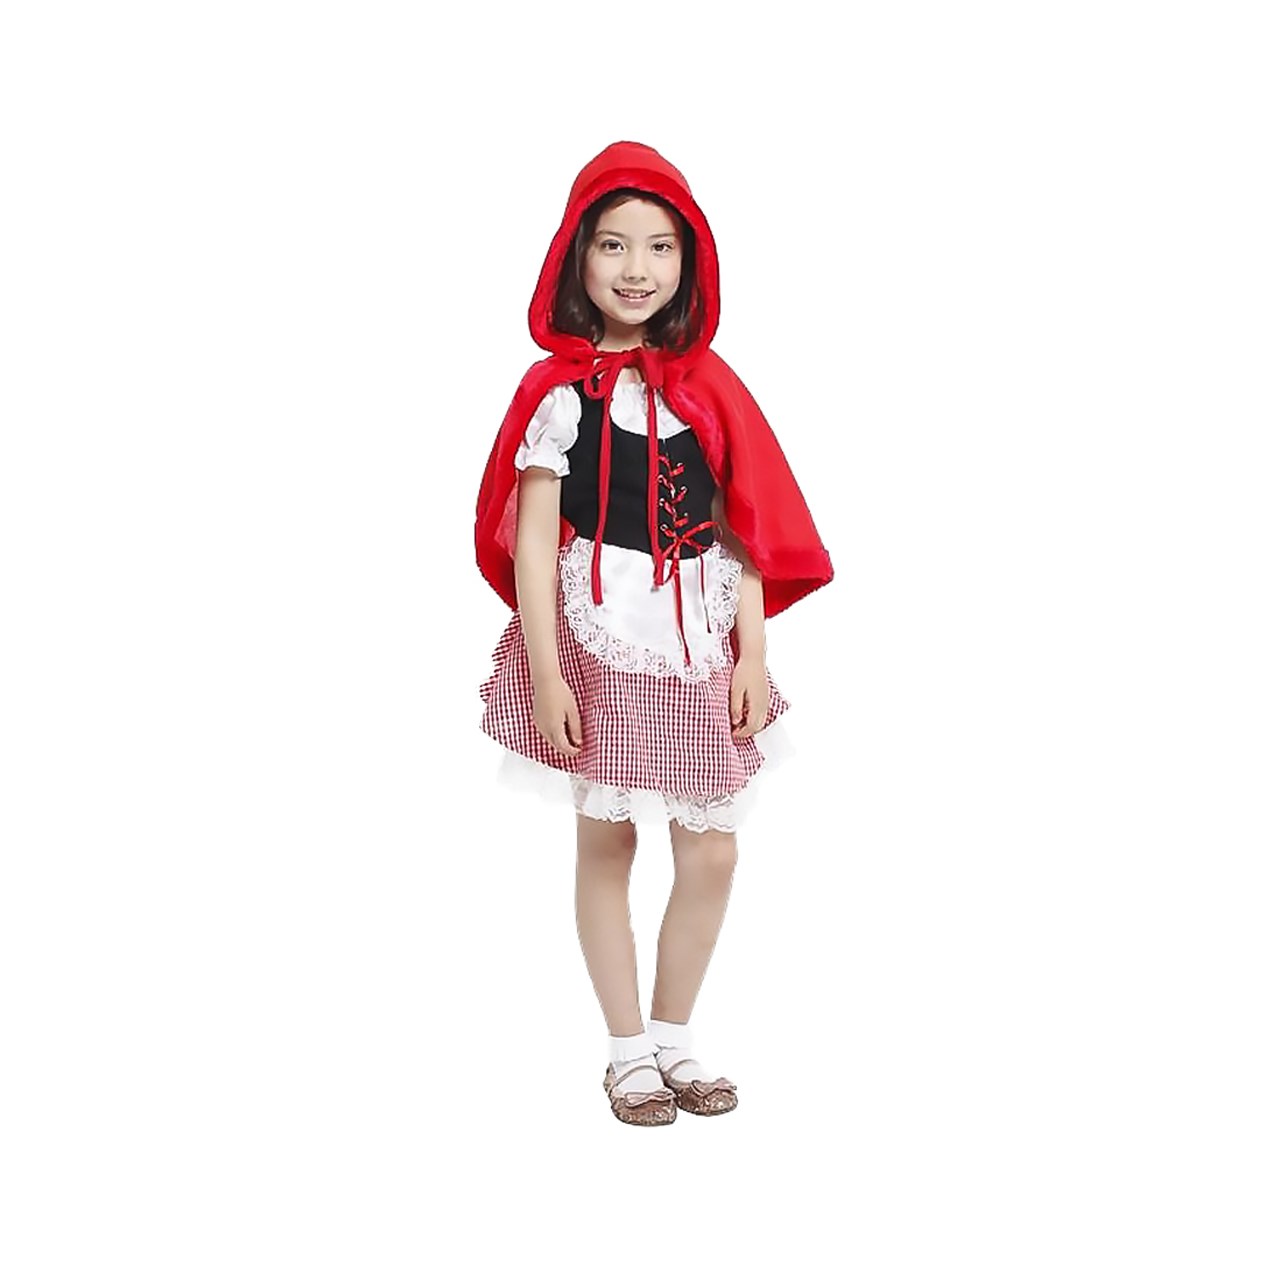 تن پوش گیفت تاور مدل شنل قرمزی دخترانه سایز L